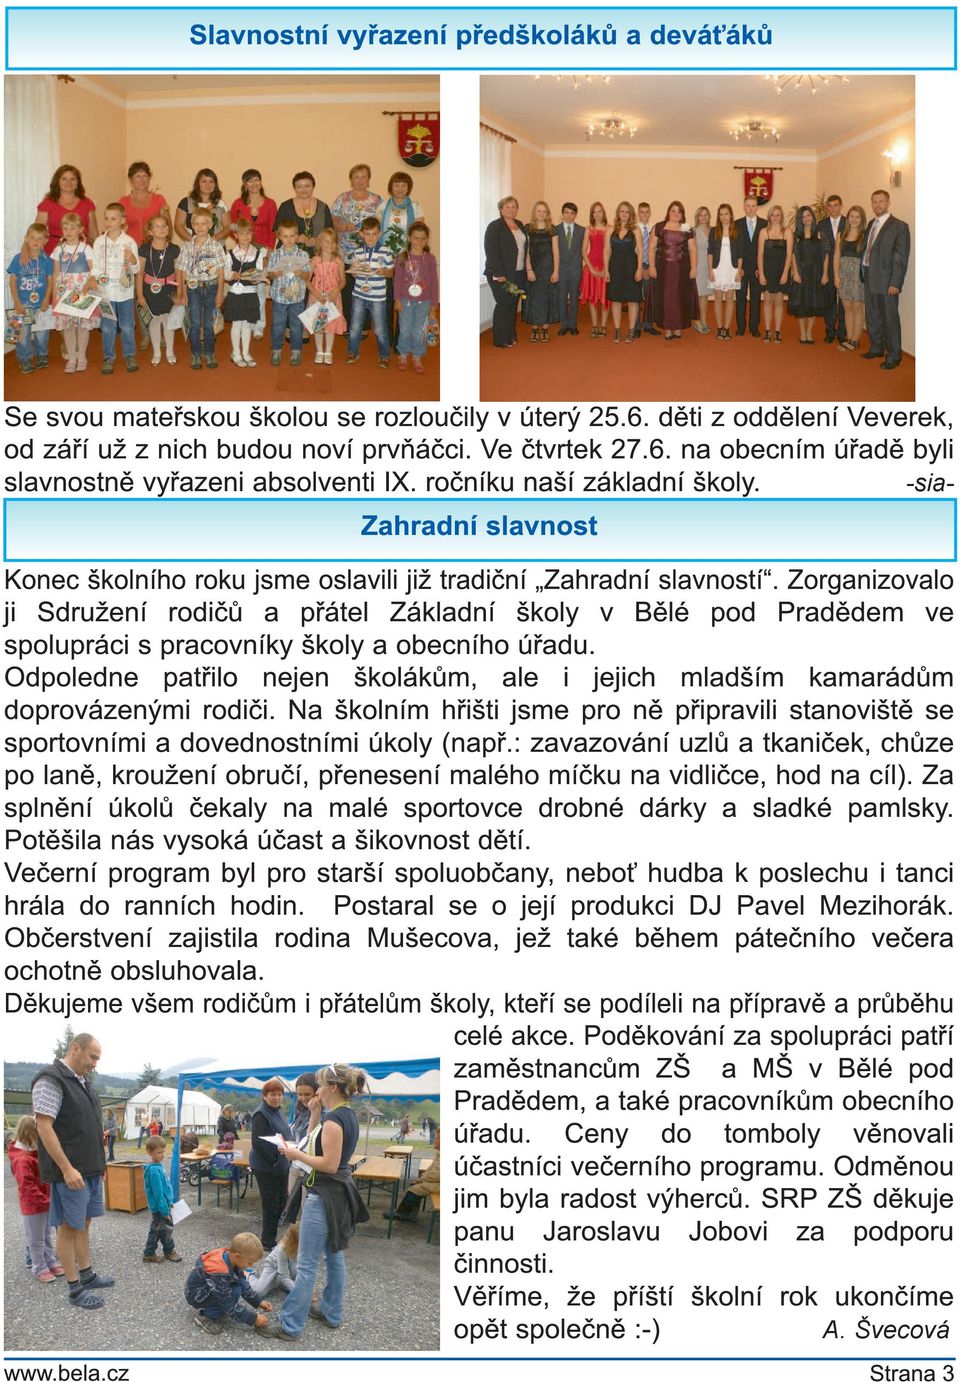 Zorganizovalo ji Sdružení rodičů a přátel Základní školy v Bělé pod Pradědem ve spolupráci s pracovníky školy a obecního úřadu.